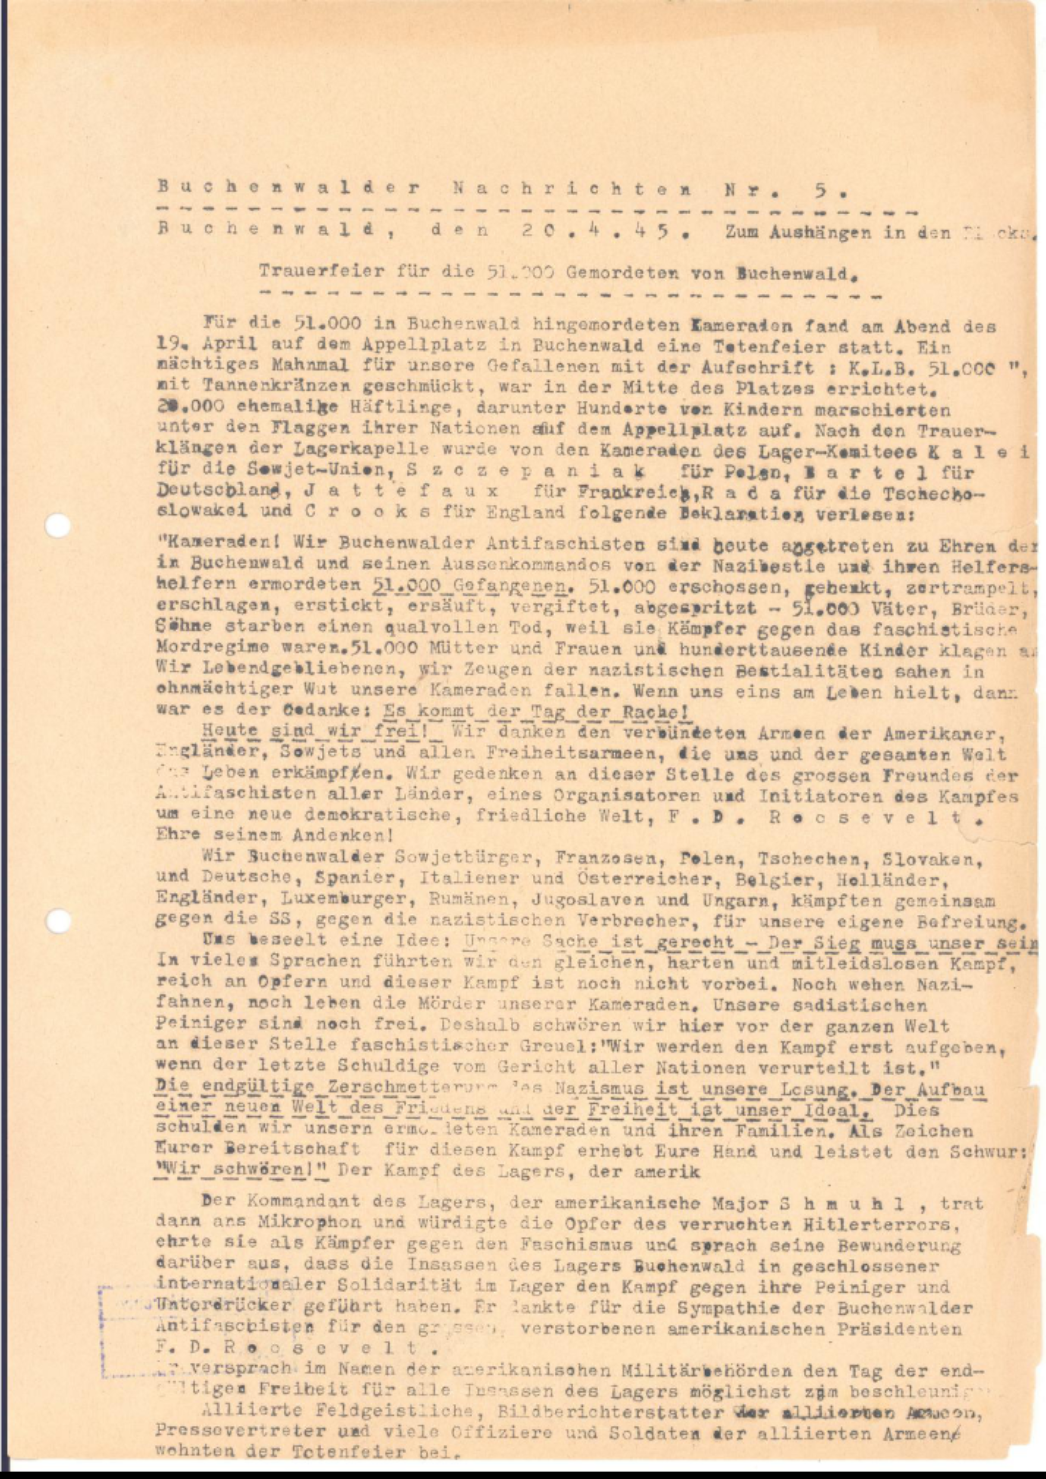 Tight typewritten text page under the title "Buchenwalder Nachrichten No. 5. Funeral service for the 51000 murdered at Buchenwald".